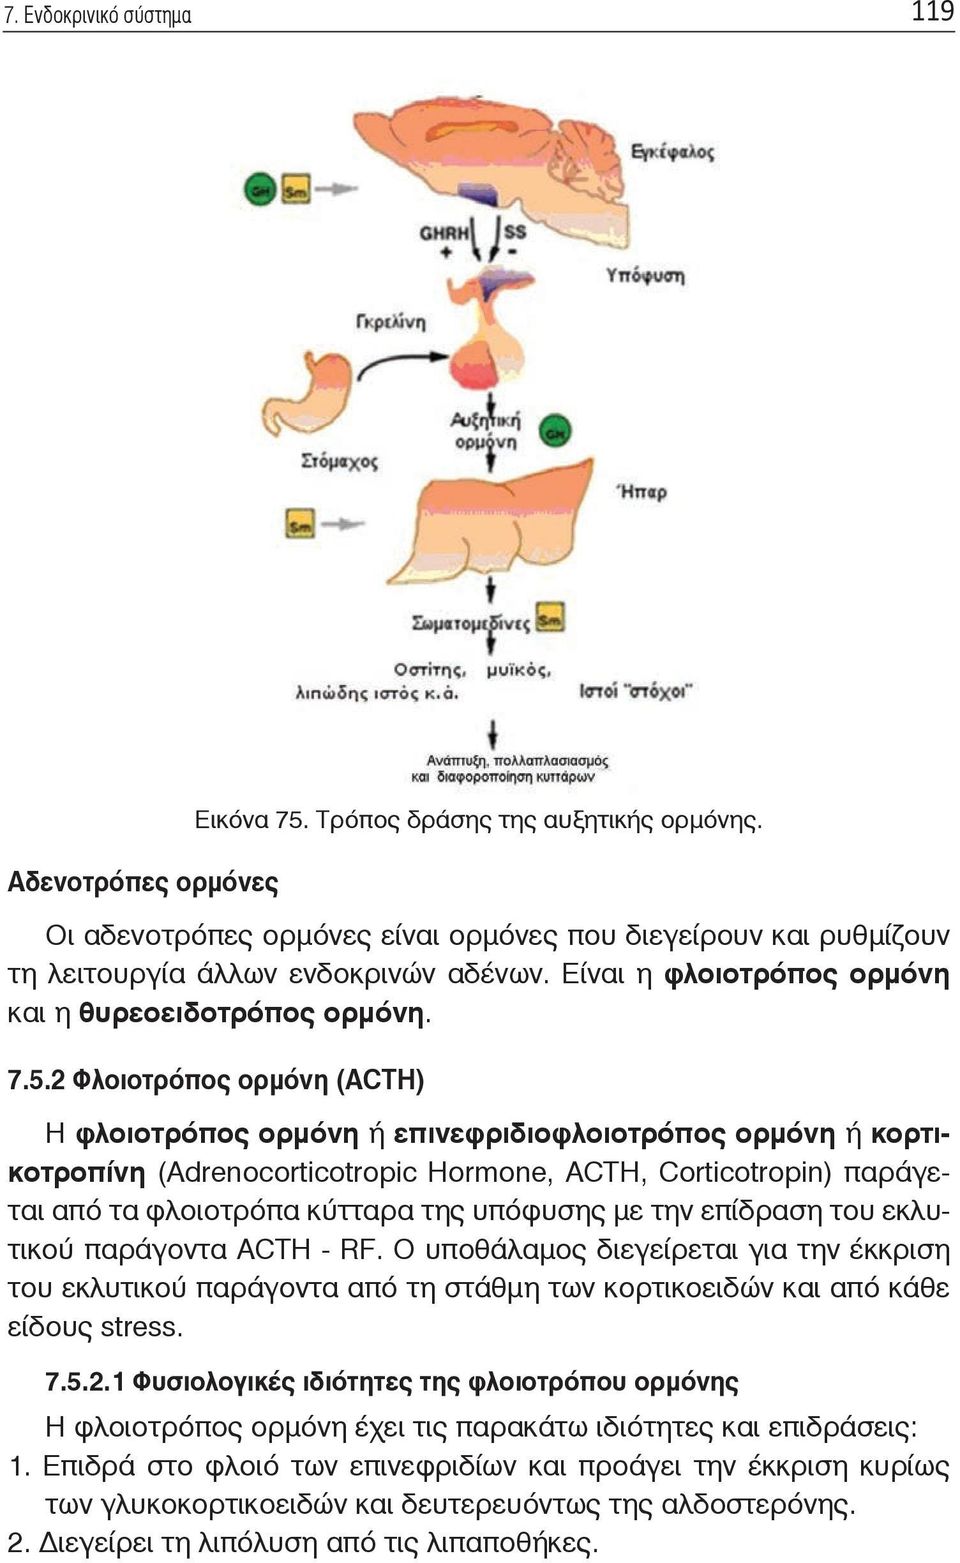 2 Φλοιοτρόπος ορμόνη (ACTH) Η φλοιοτρόπος ορμόνη ή επινεφριδιοφλοιοτρόπος ορμόνη ή κορτικοτροπίνη (Adrenocorticotropic Hormone, ACTH, Corticotropin) παράγεται από τα φλοιοτρόπα κύτταρα της υπόφυσης